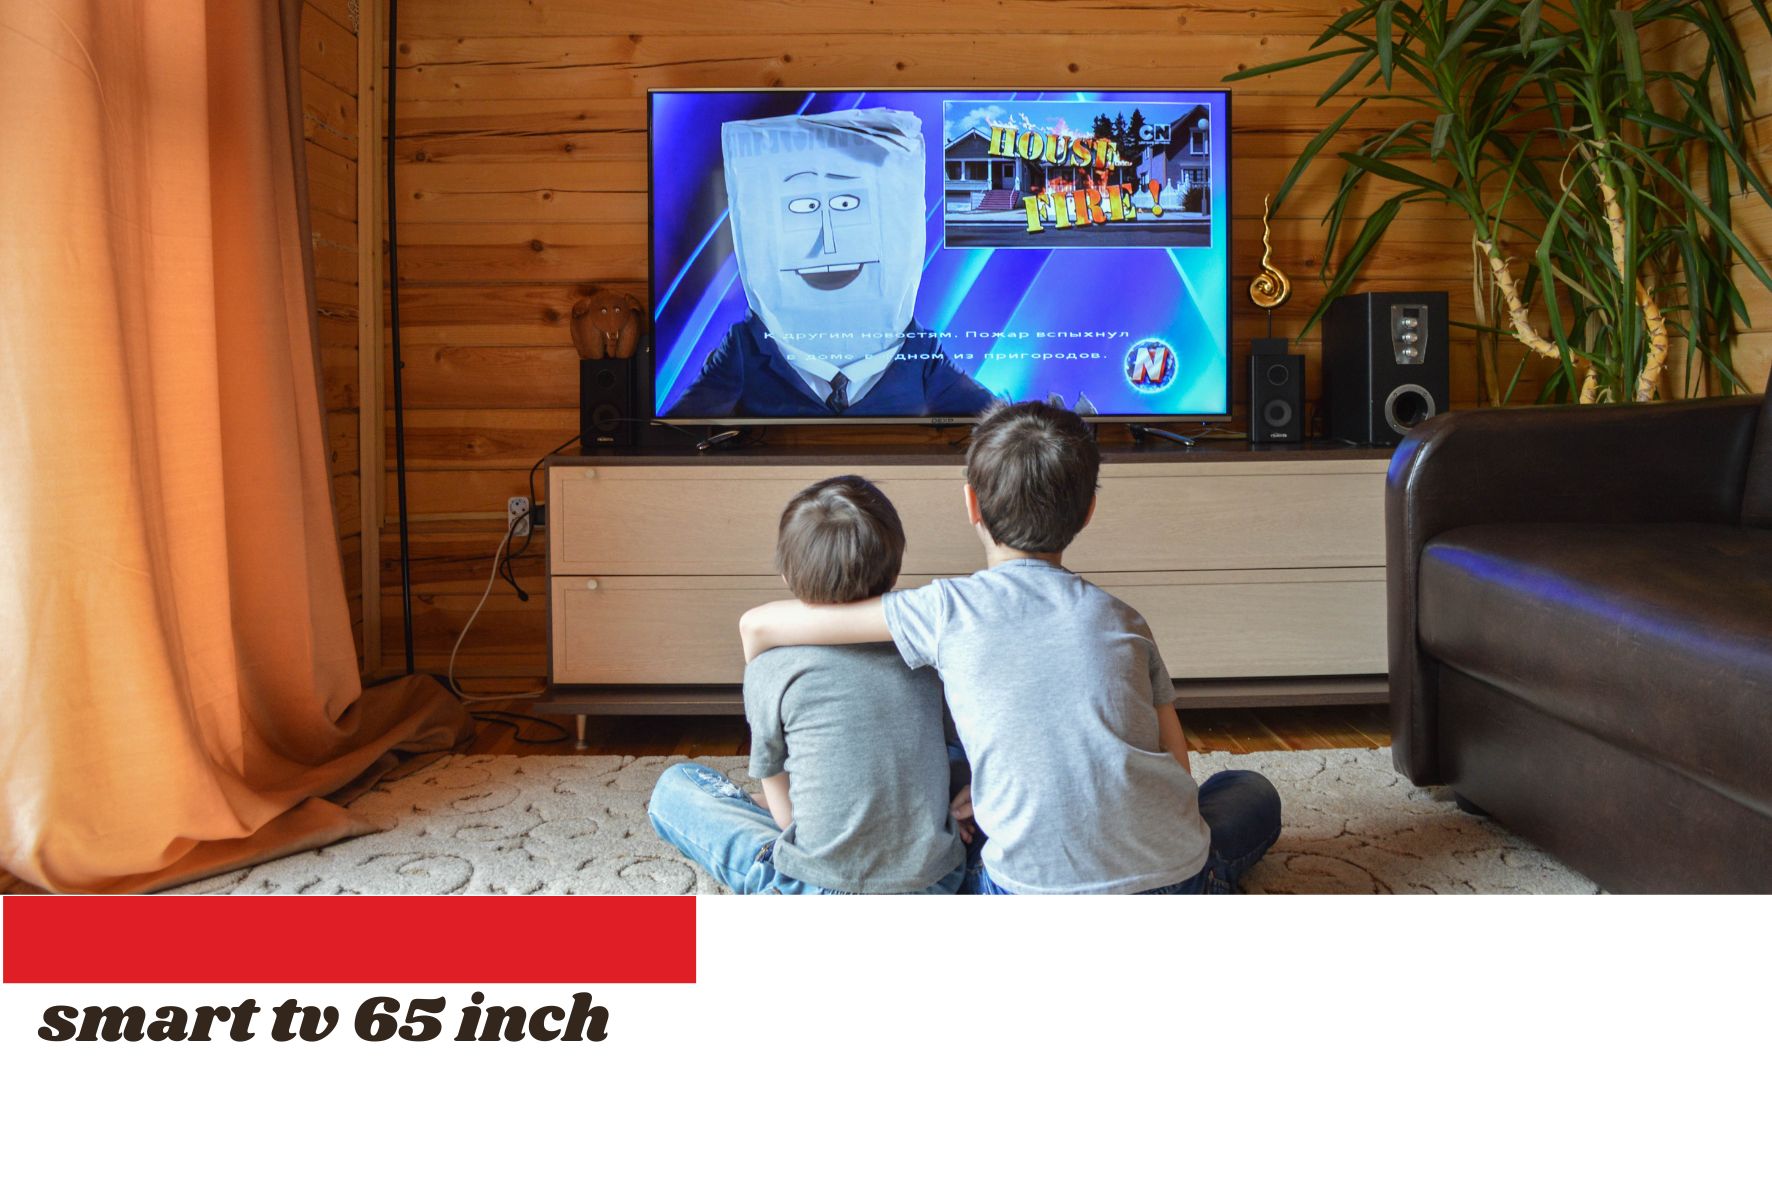 4 Smart TV 65 Inch yang Sajikan Tontonan Layar Super Lebar, Ada yang Didiscount sampai 4 Jutaan